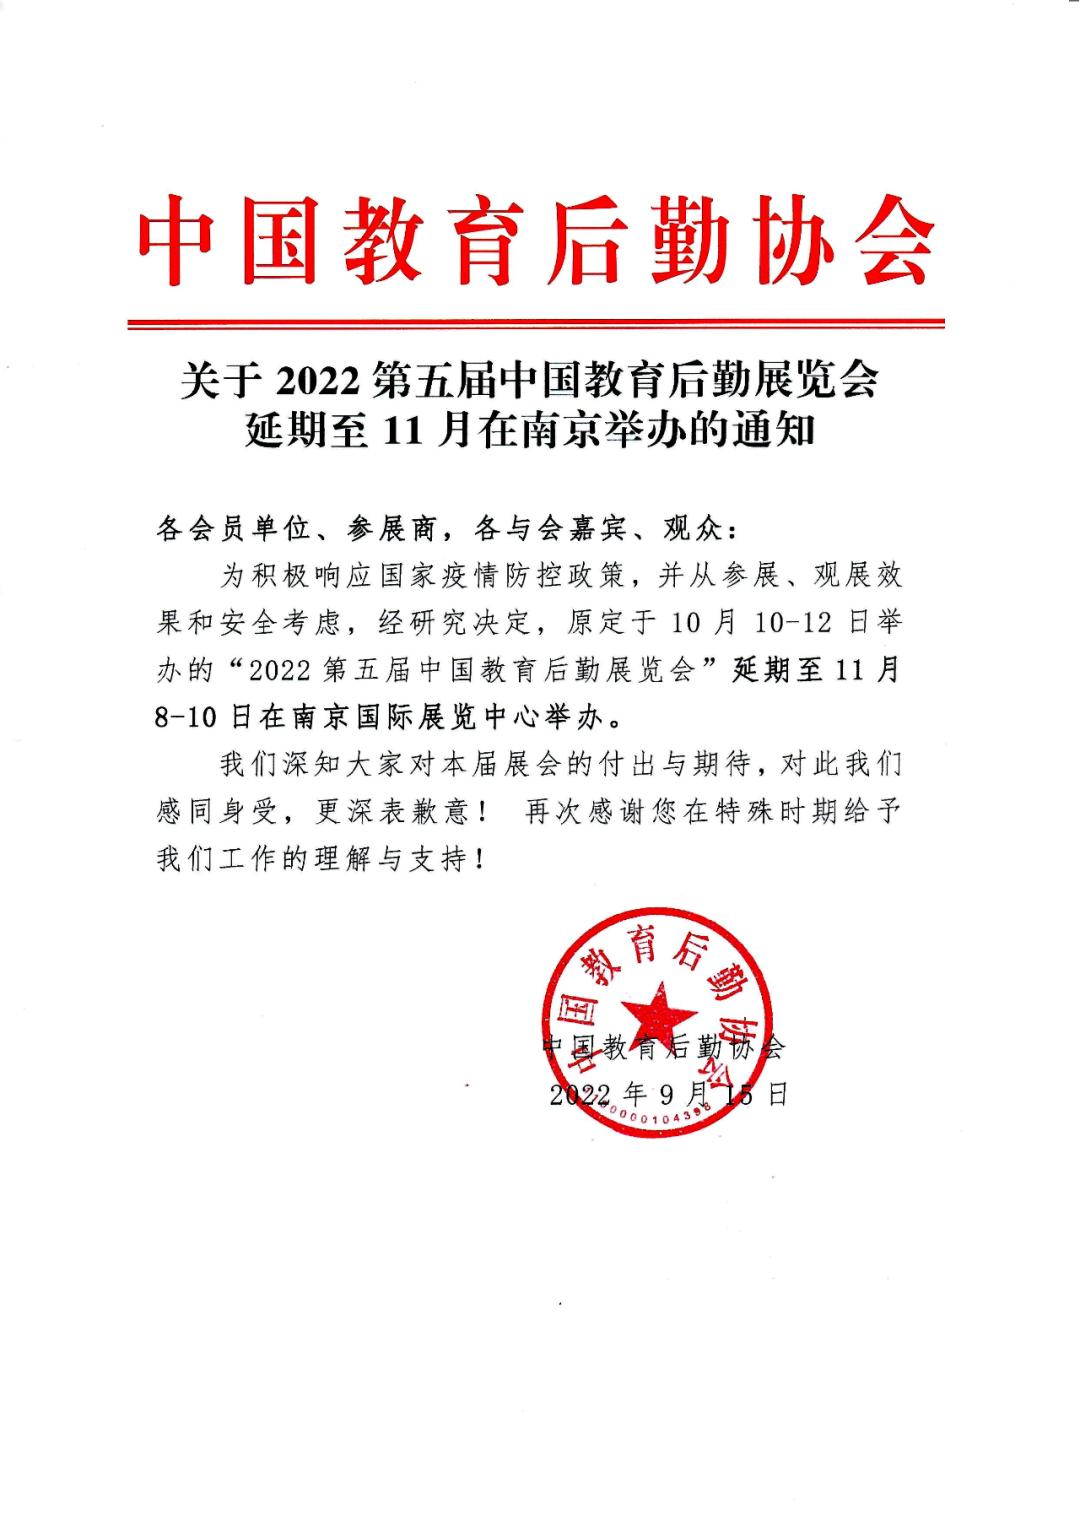 关于“第五届CCLE教育后勤展延期至11月在南京举办”的通知